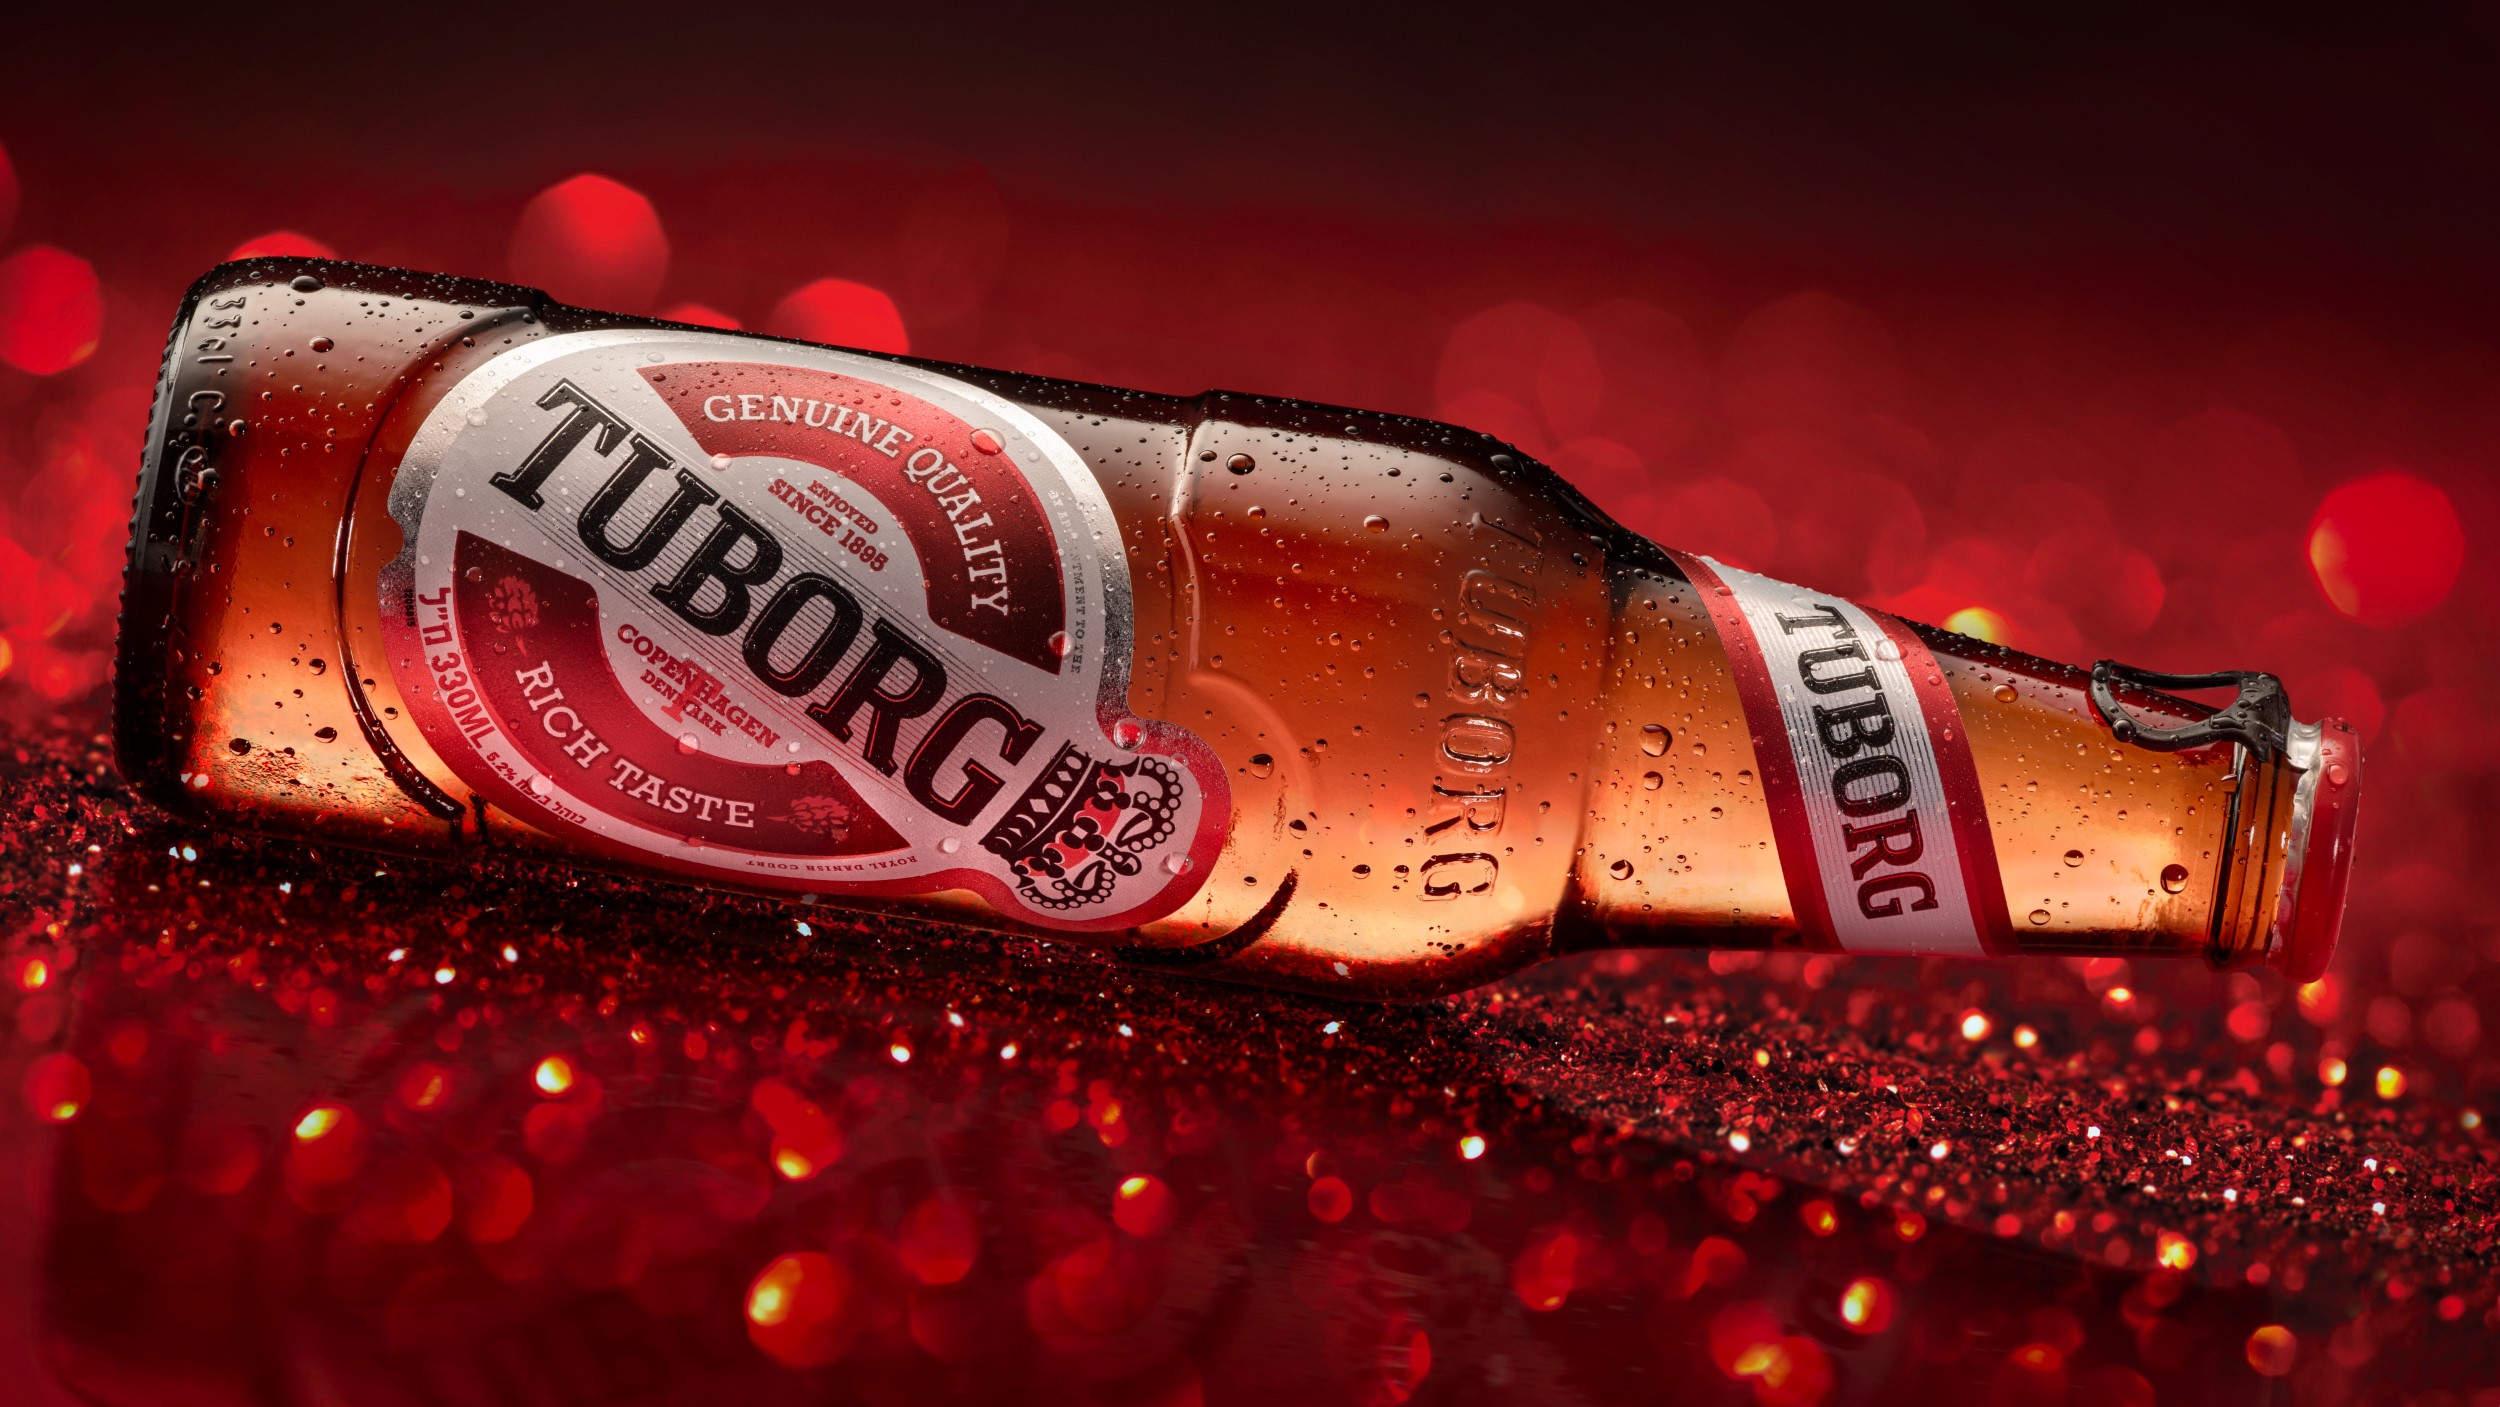 בקבוק בירה טובורג TUBORG קריר עם טיפות על רקע אדום כהה עם ניצנוצים בפוקוס סלקטיבי